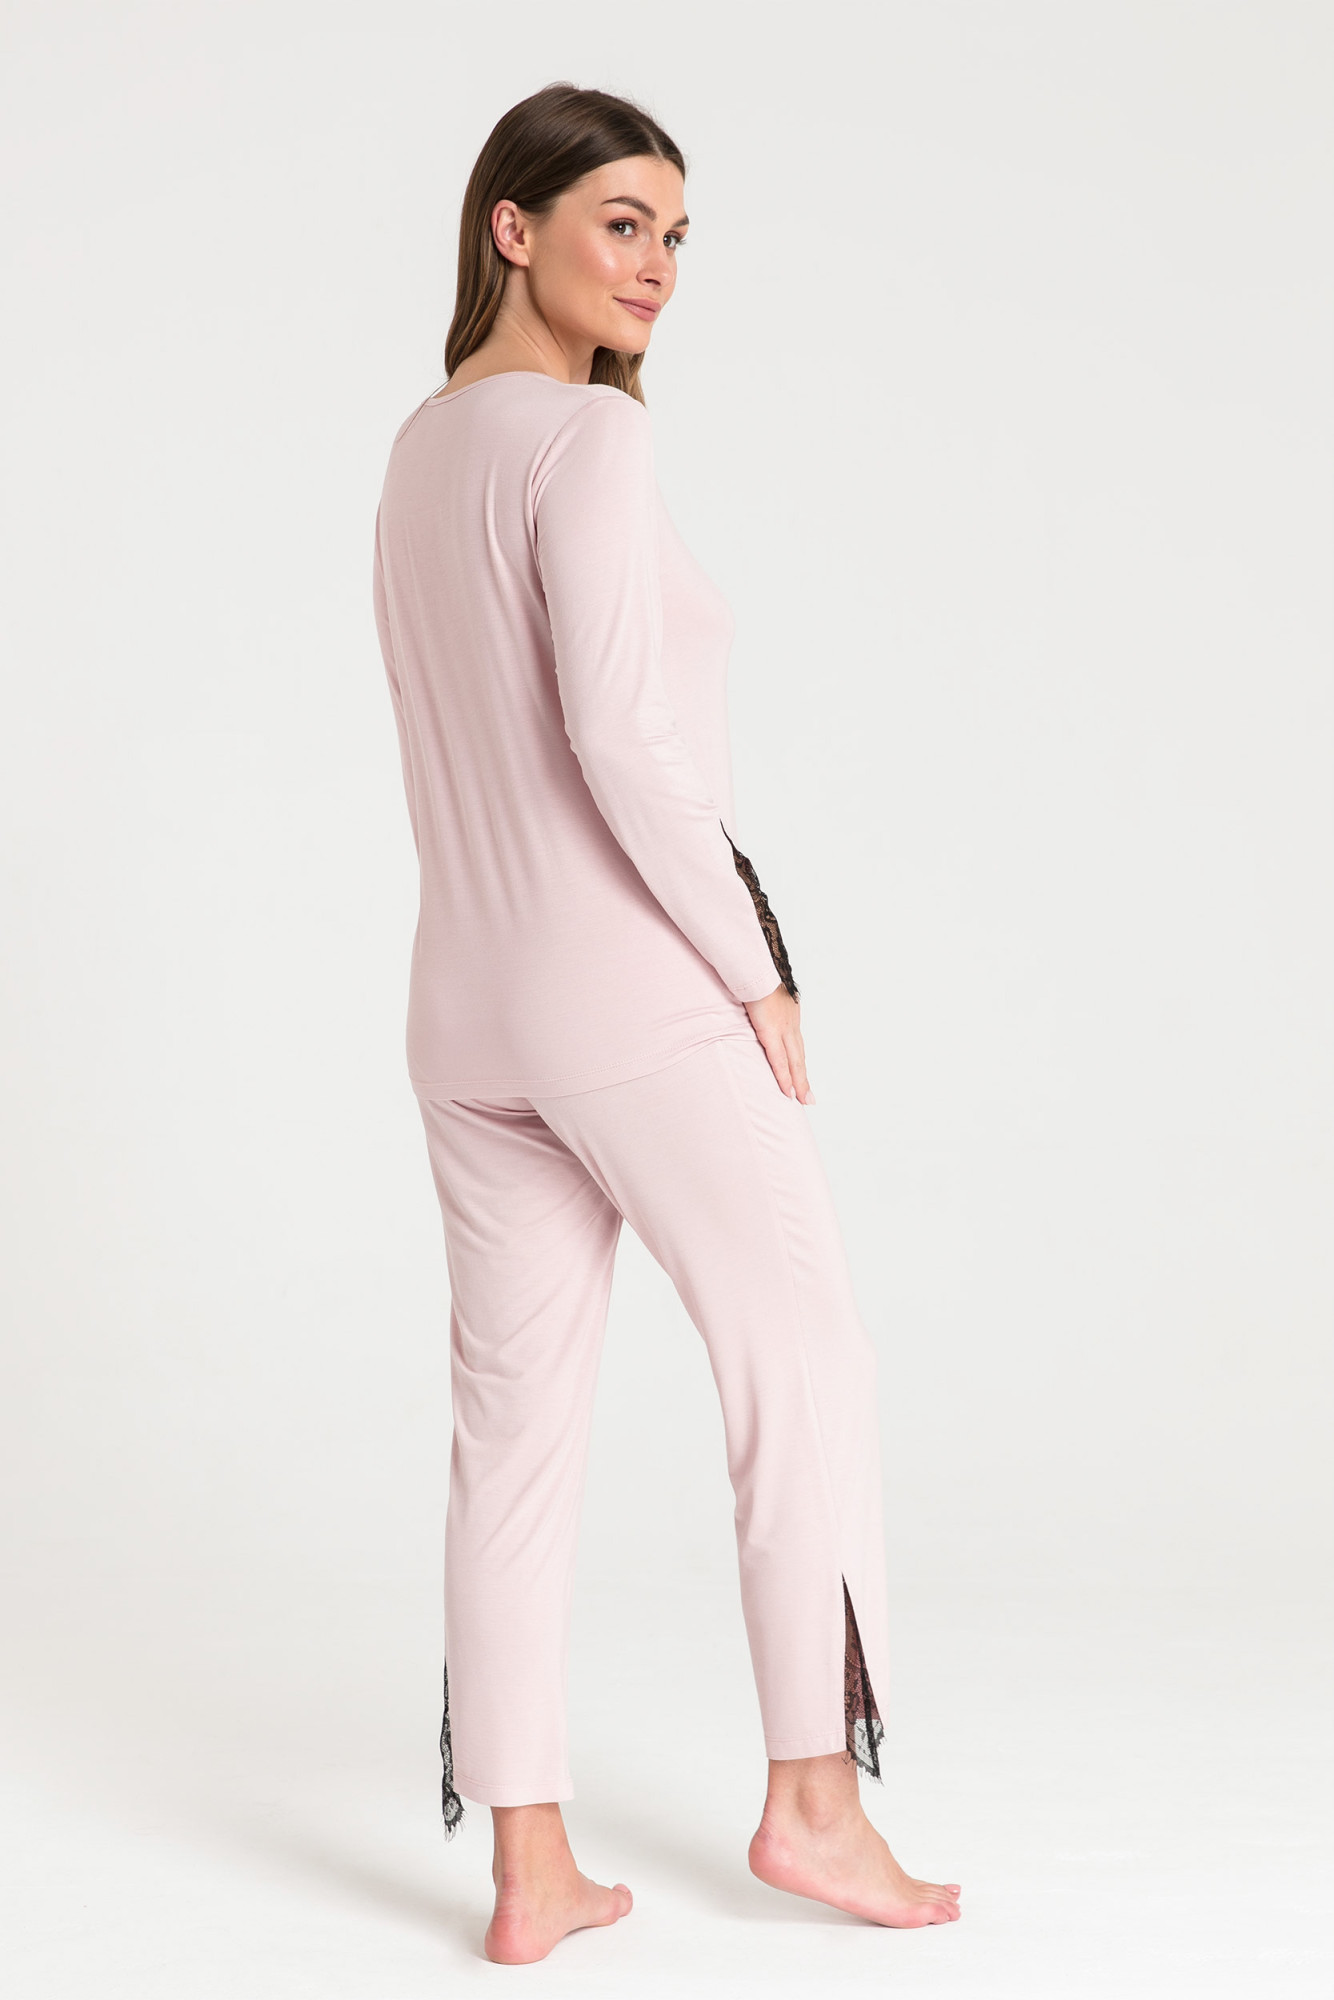 Dámský pyžamový Top LA072 Pudr růžová - LaLupa pudrovo-růžová XL